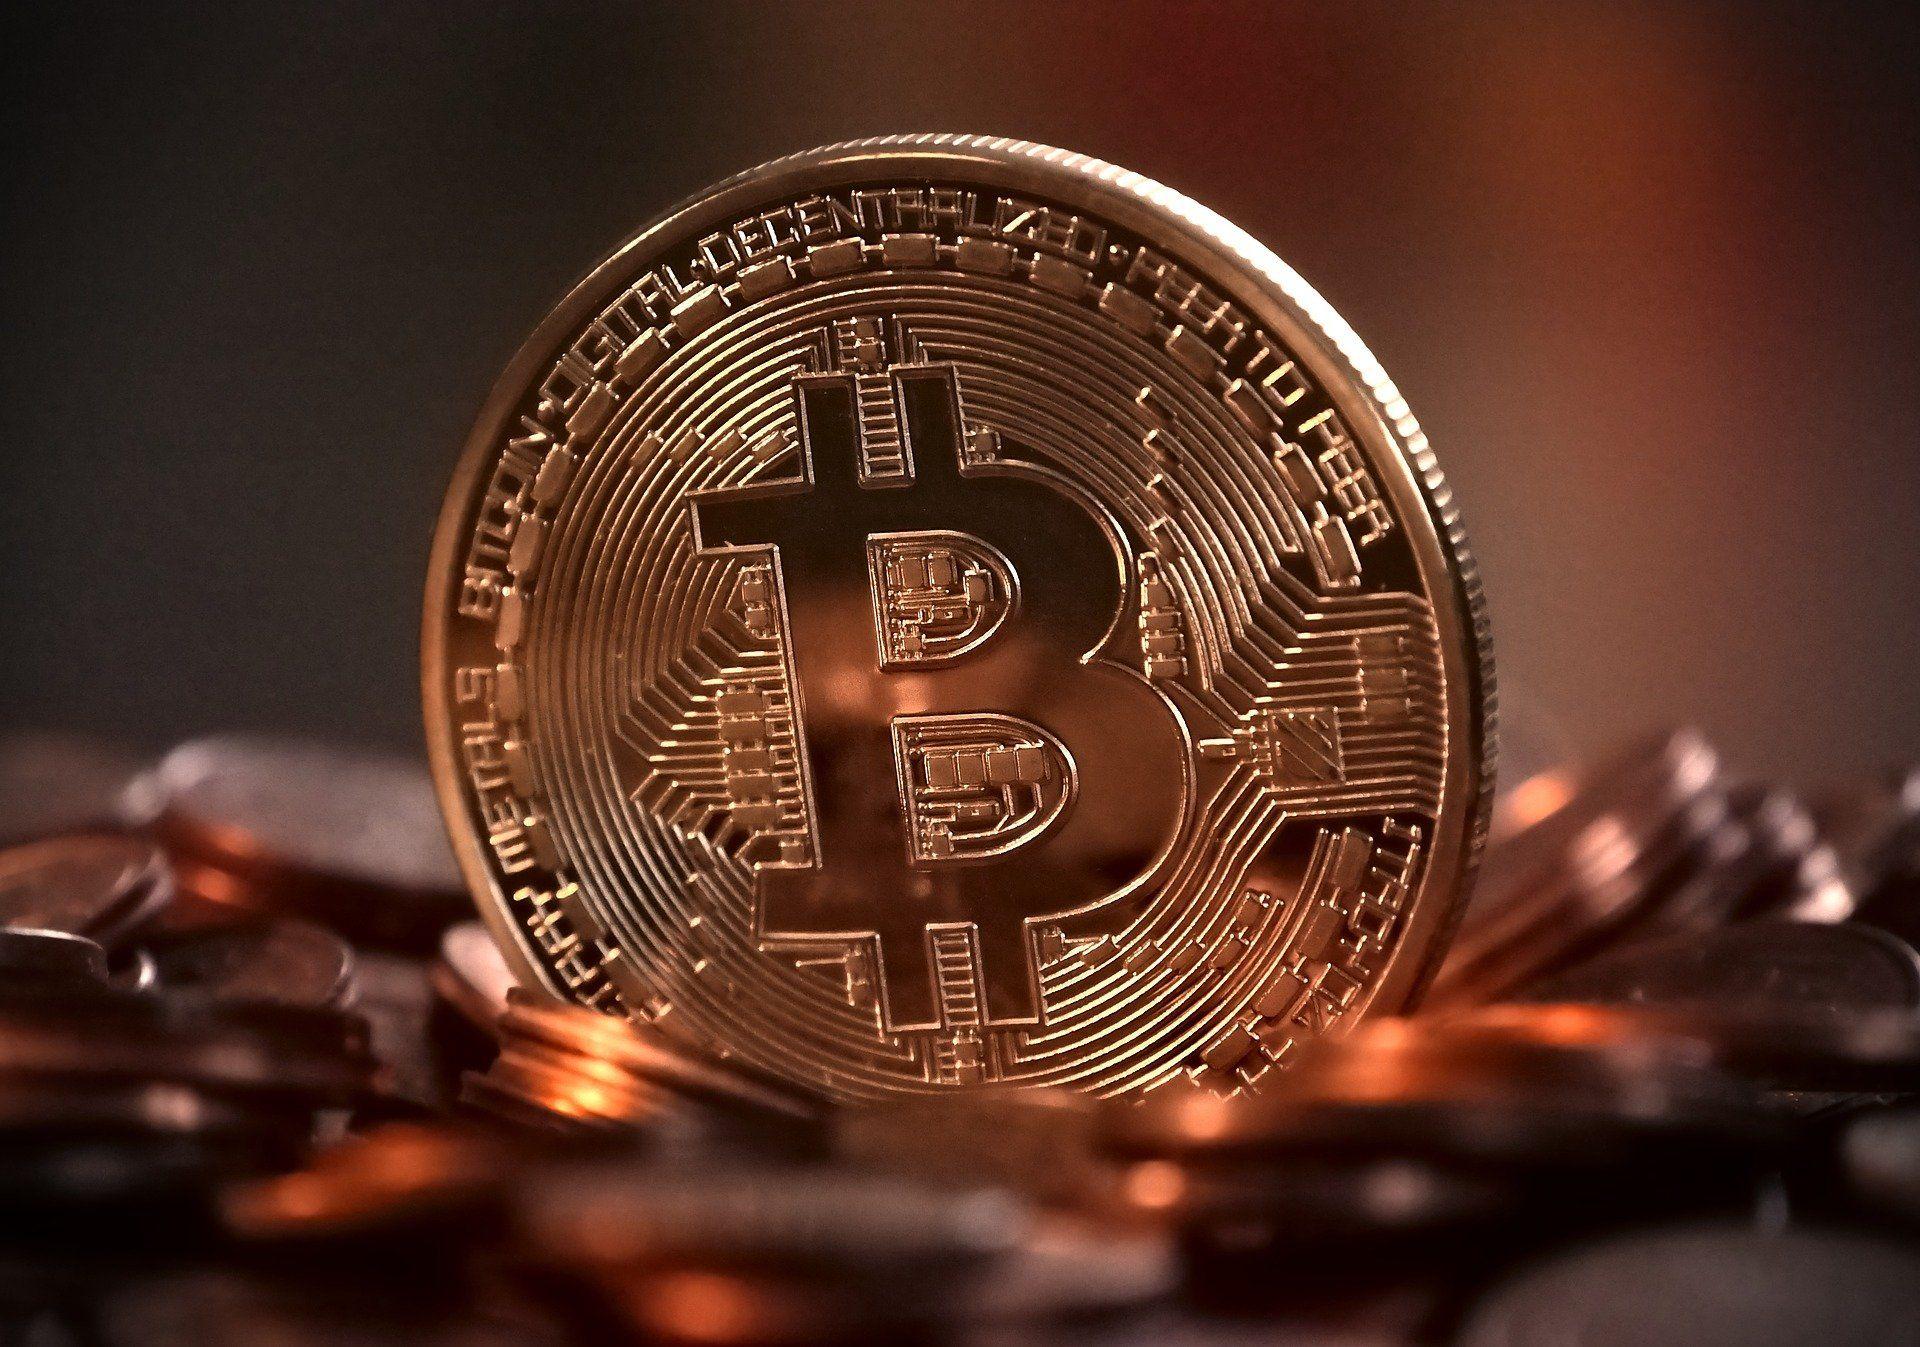 Kimin elinde en fazla bitcoin var?